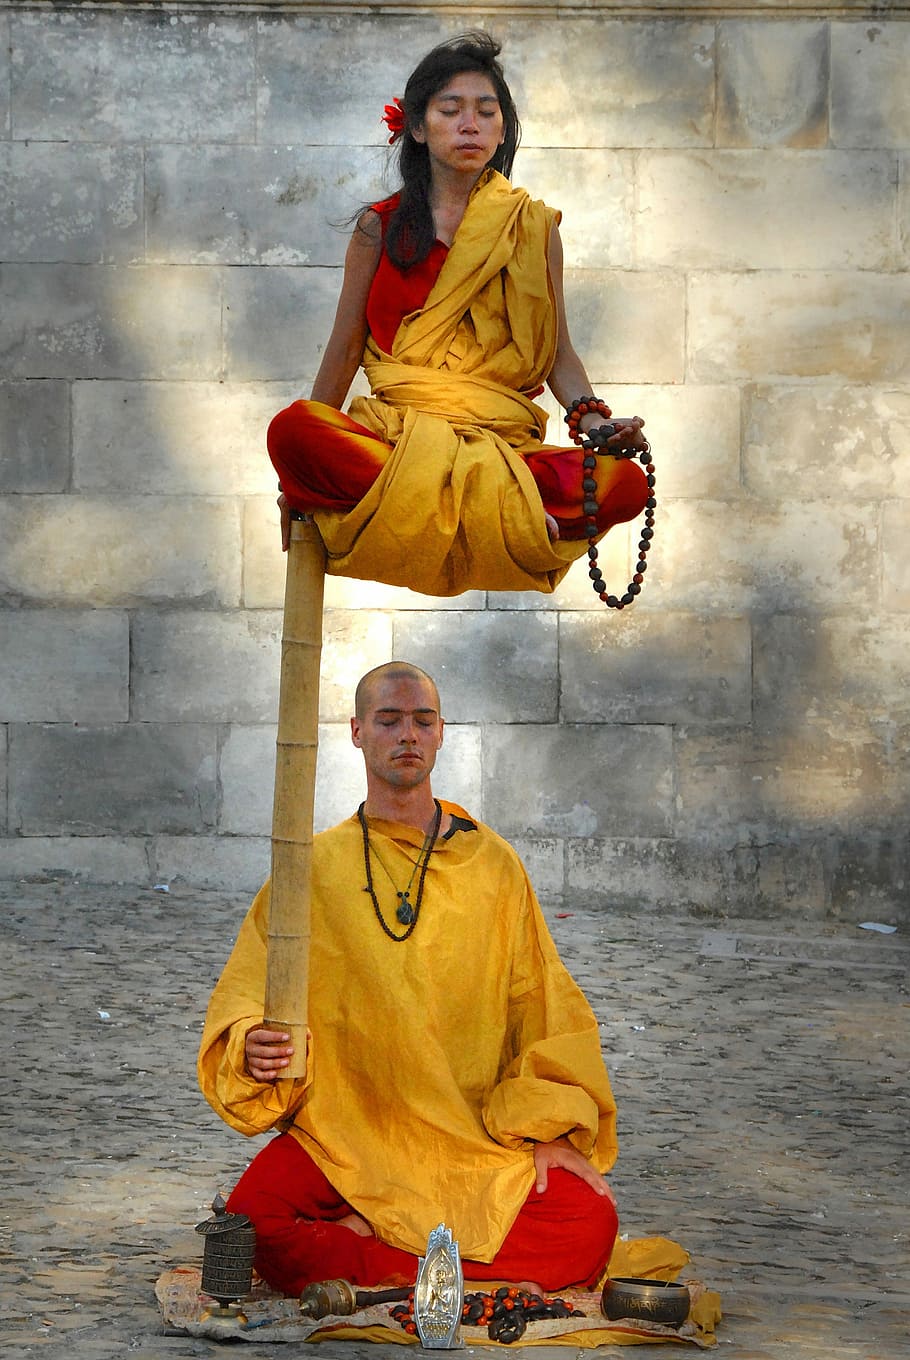 2つの僧侶が浮かぶ, 禅, 魔法, 瞑想, 集中, ぼんやり, 静けさ, 思考, 考える, 落ち着く